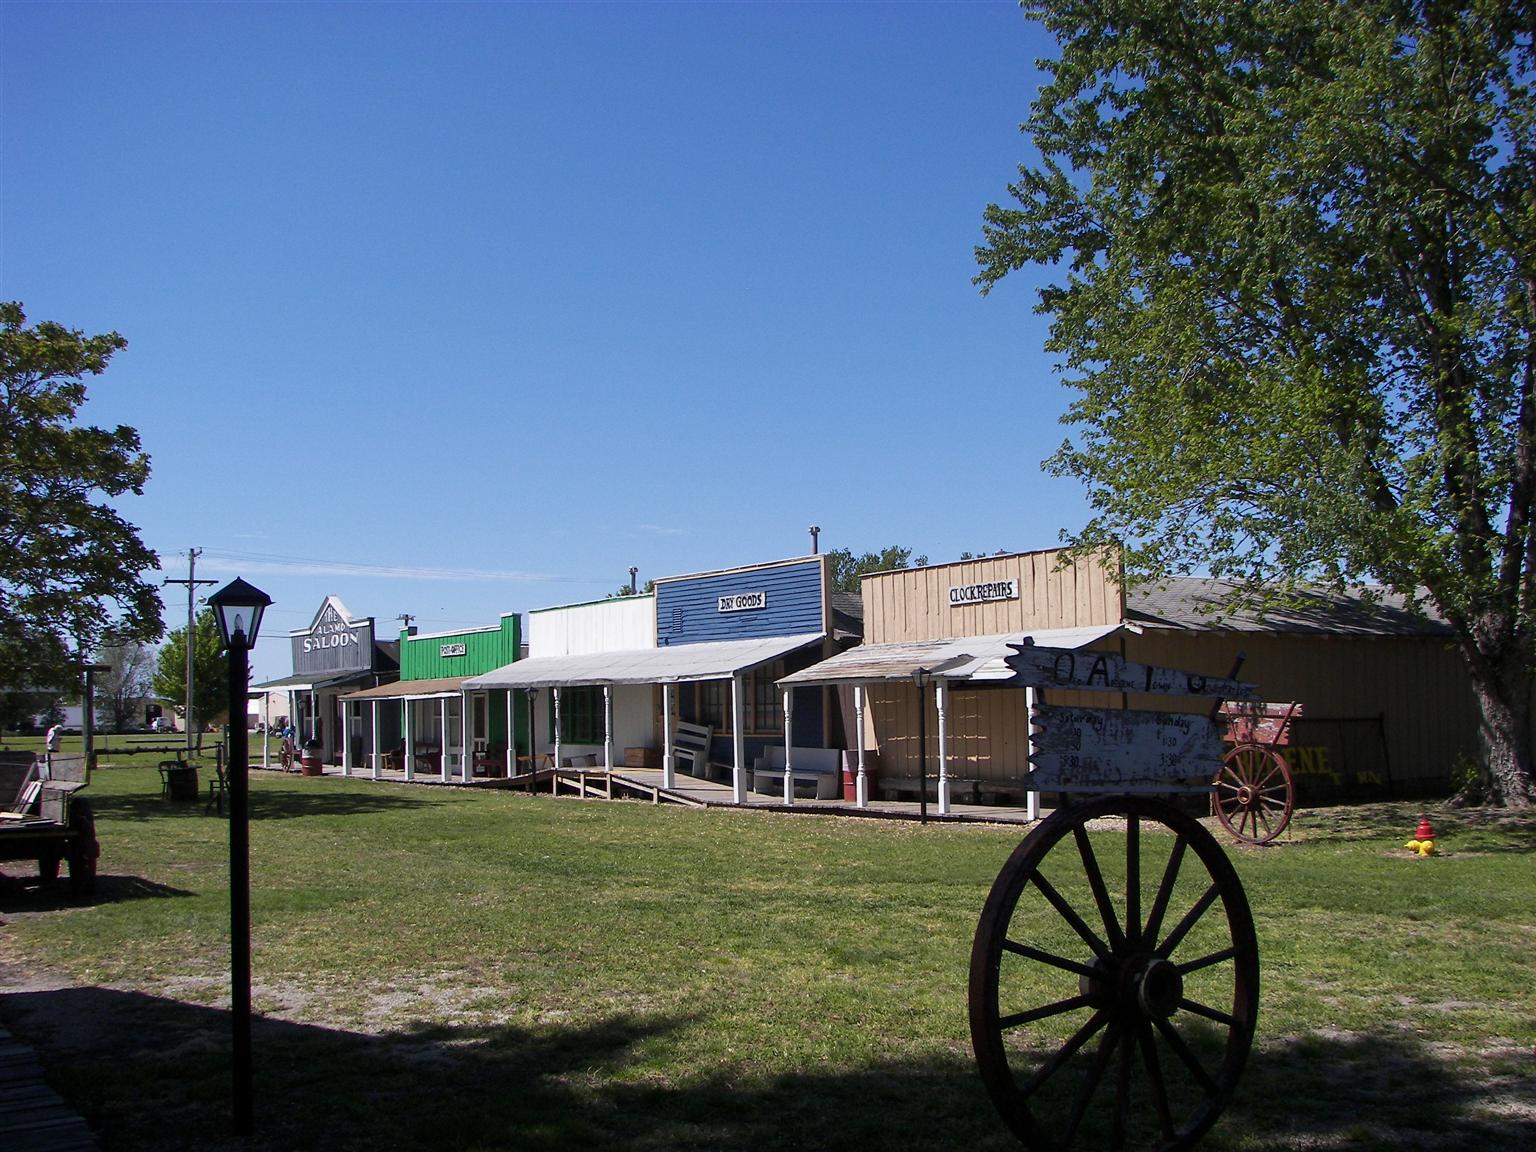 Old Town near Eisenhower Library in Abilene, Kansas